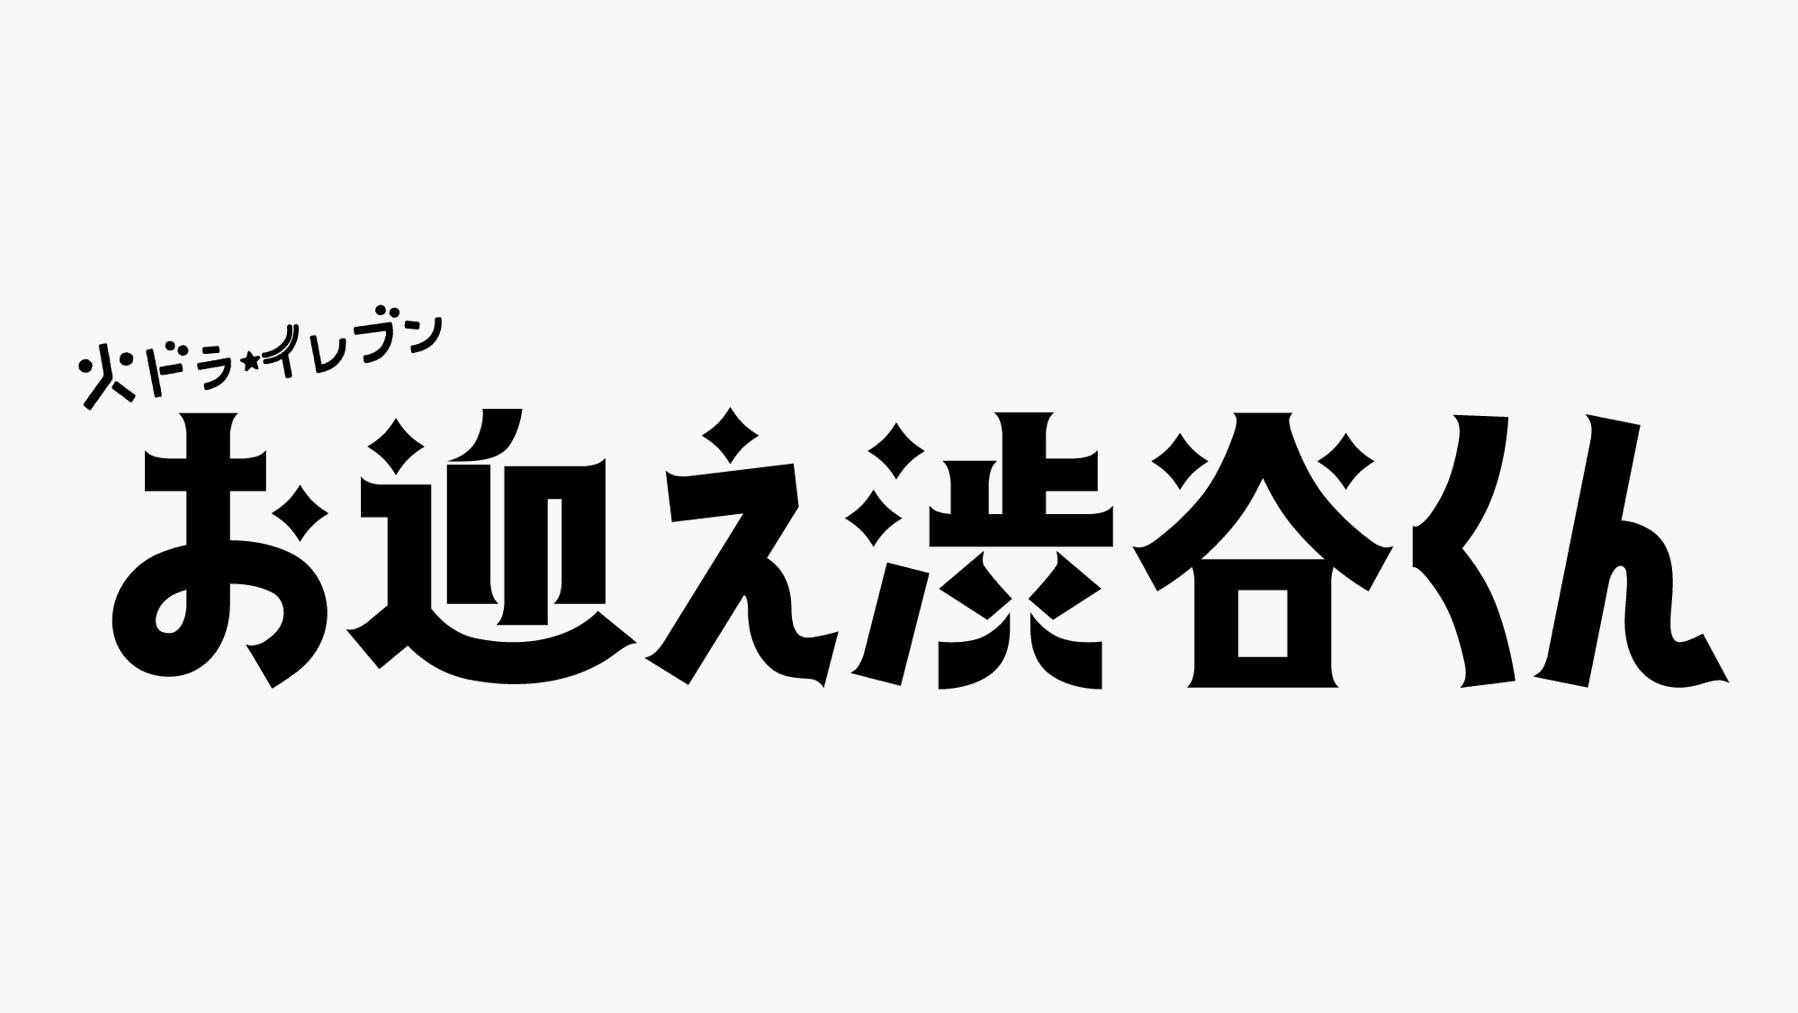 『お迎え渋谷くん』ロゴ